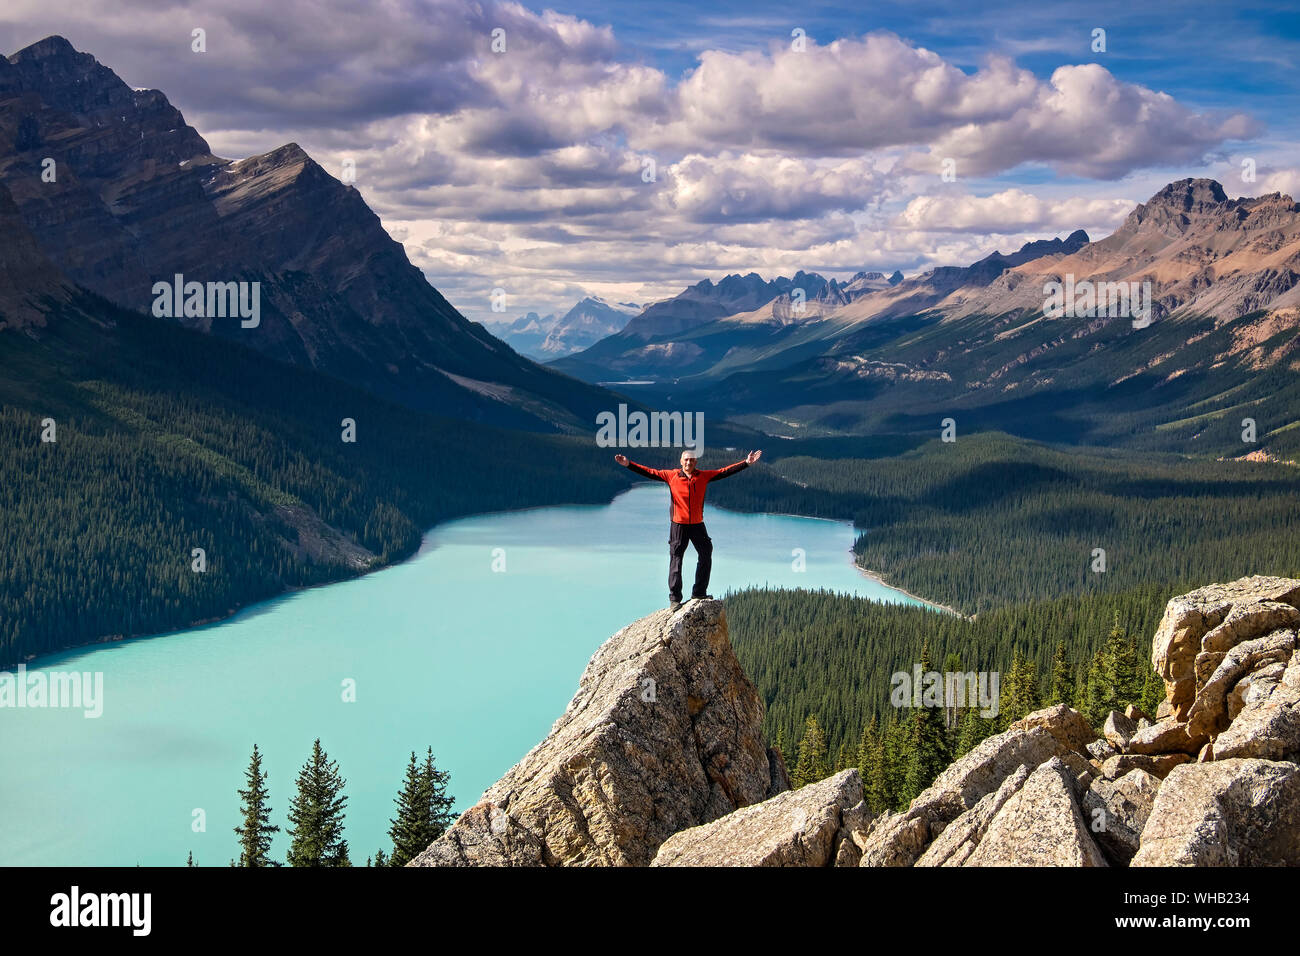 (Modèle homme) Parution à bras ouverts sur l'affleurement rocheux au-dessus du lac Peyto, Banff National Park, Rocheuses canadiennes, l'Alberta, Canada Banque D'Images